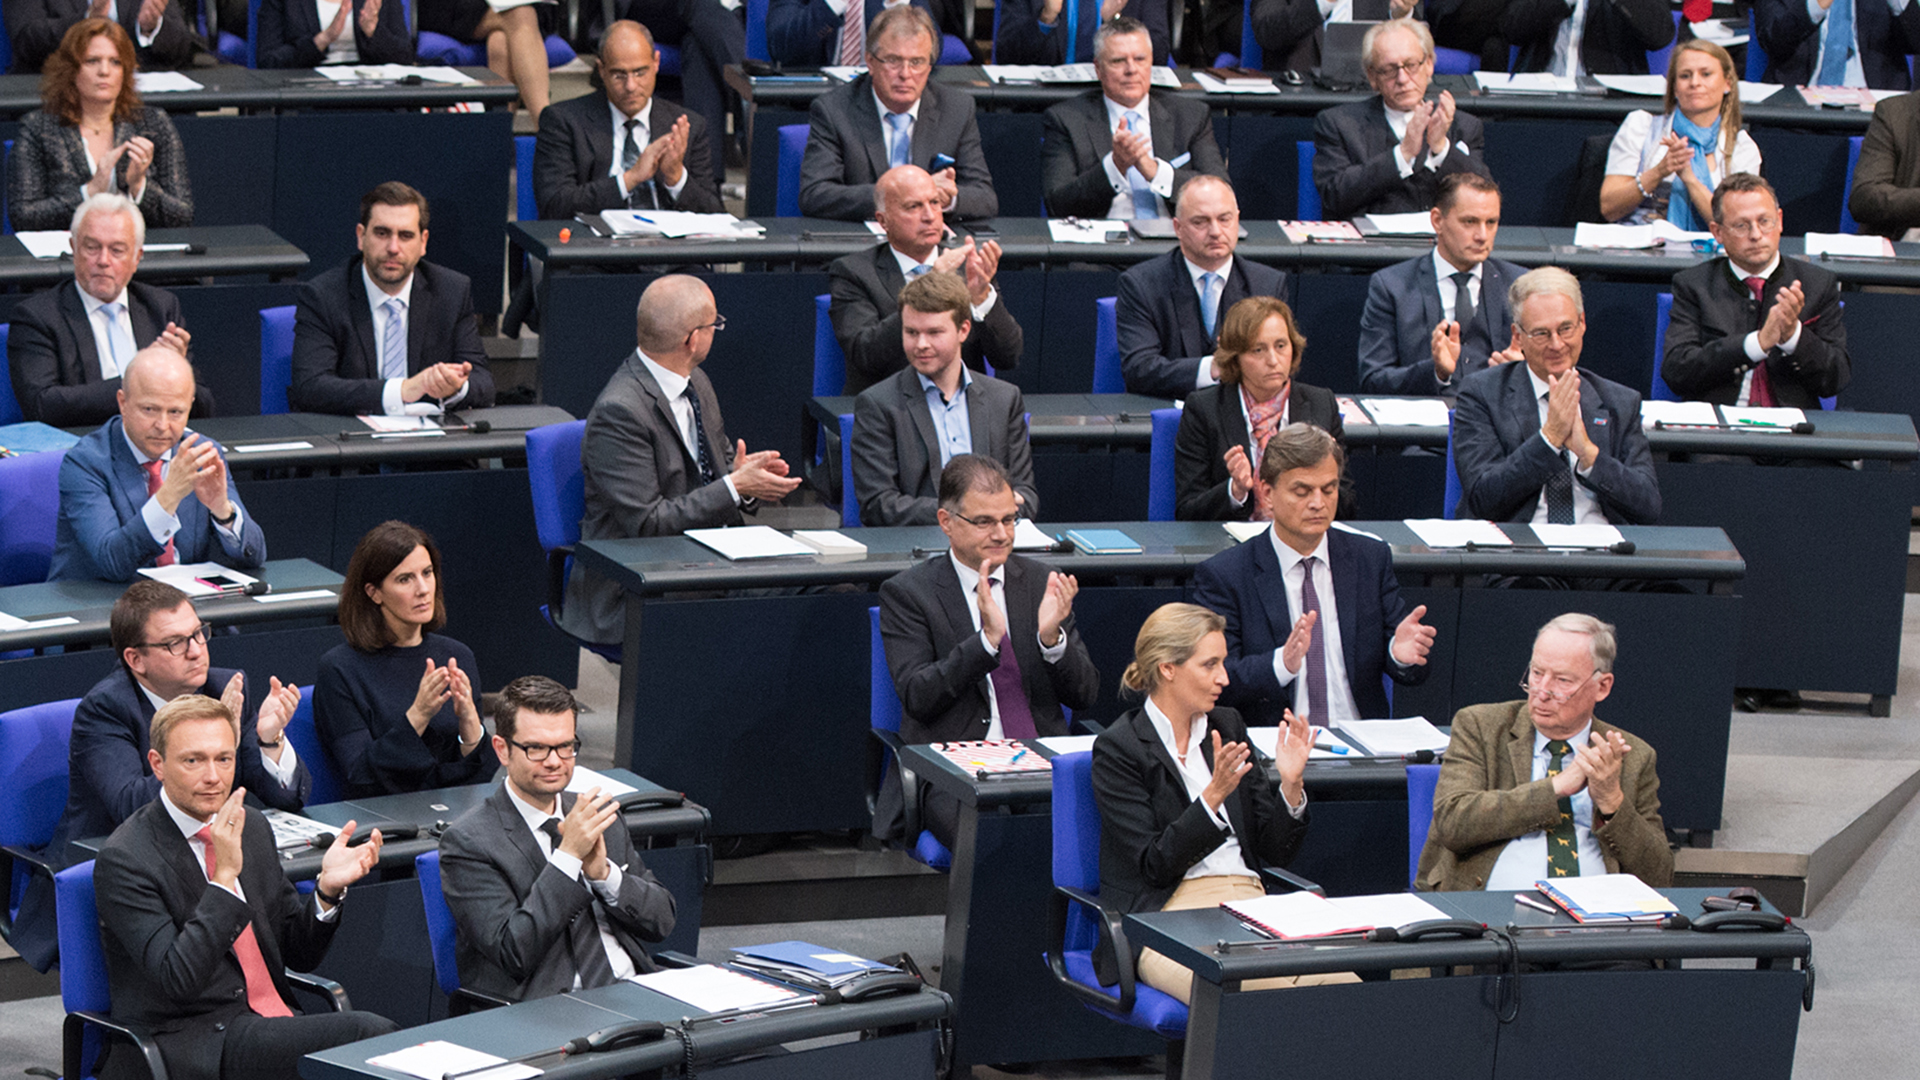 Teile der FDP- und AfD-Fraktionen bei der konstituierenden Sitzung des Bundestags am 24. Oktober 2017 | picture alliance / SvenSimon